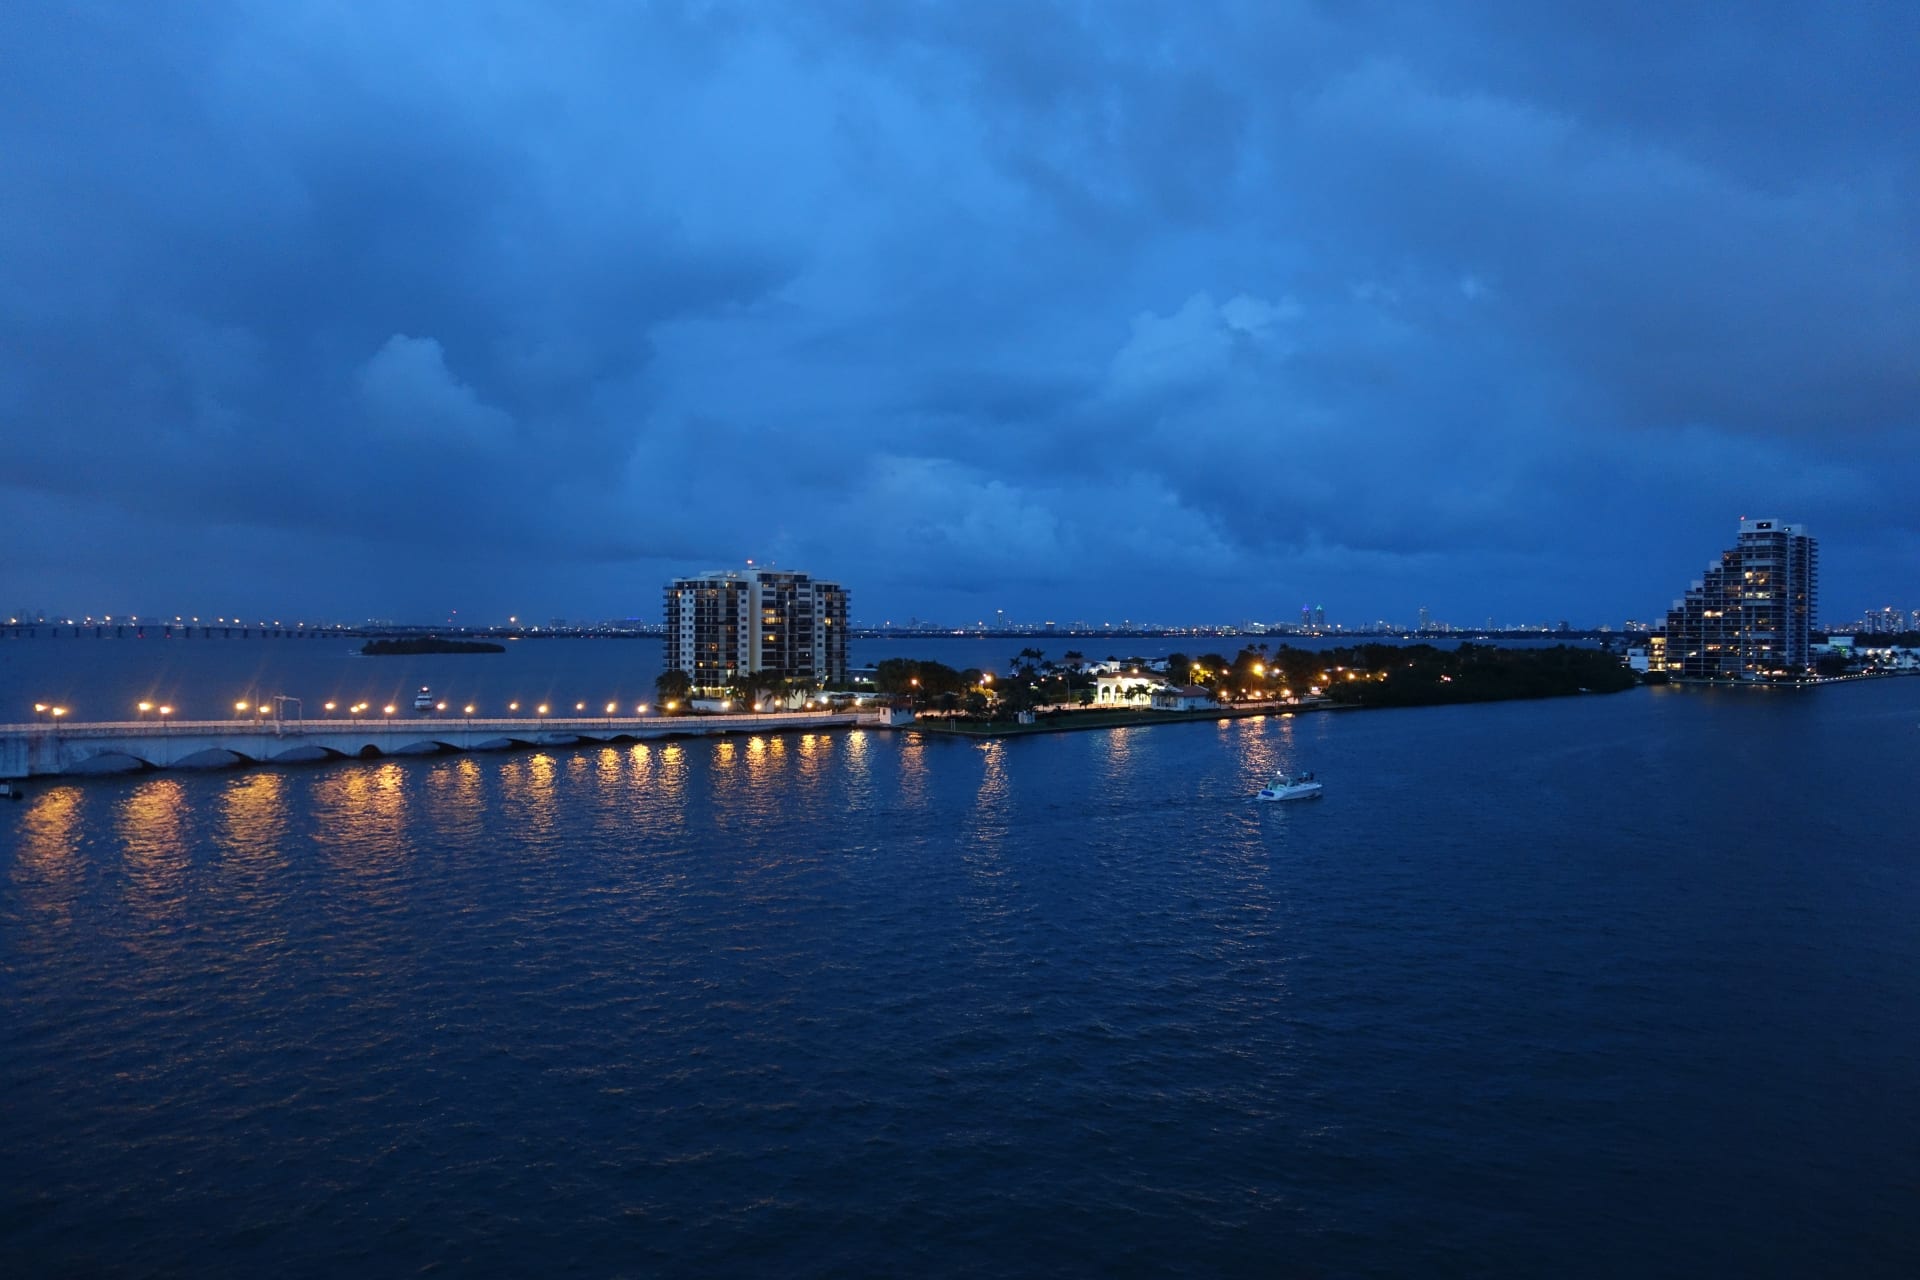 Večer a v noci si krásy miamských panoramat užijete nejvíce.